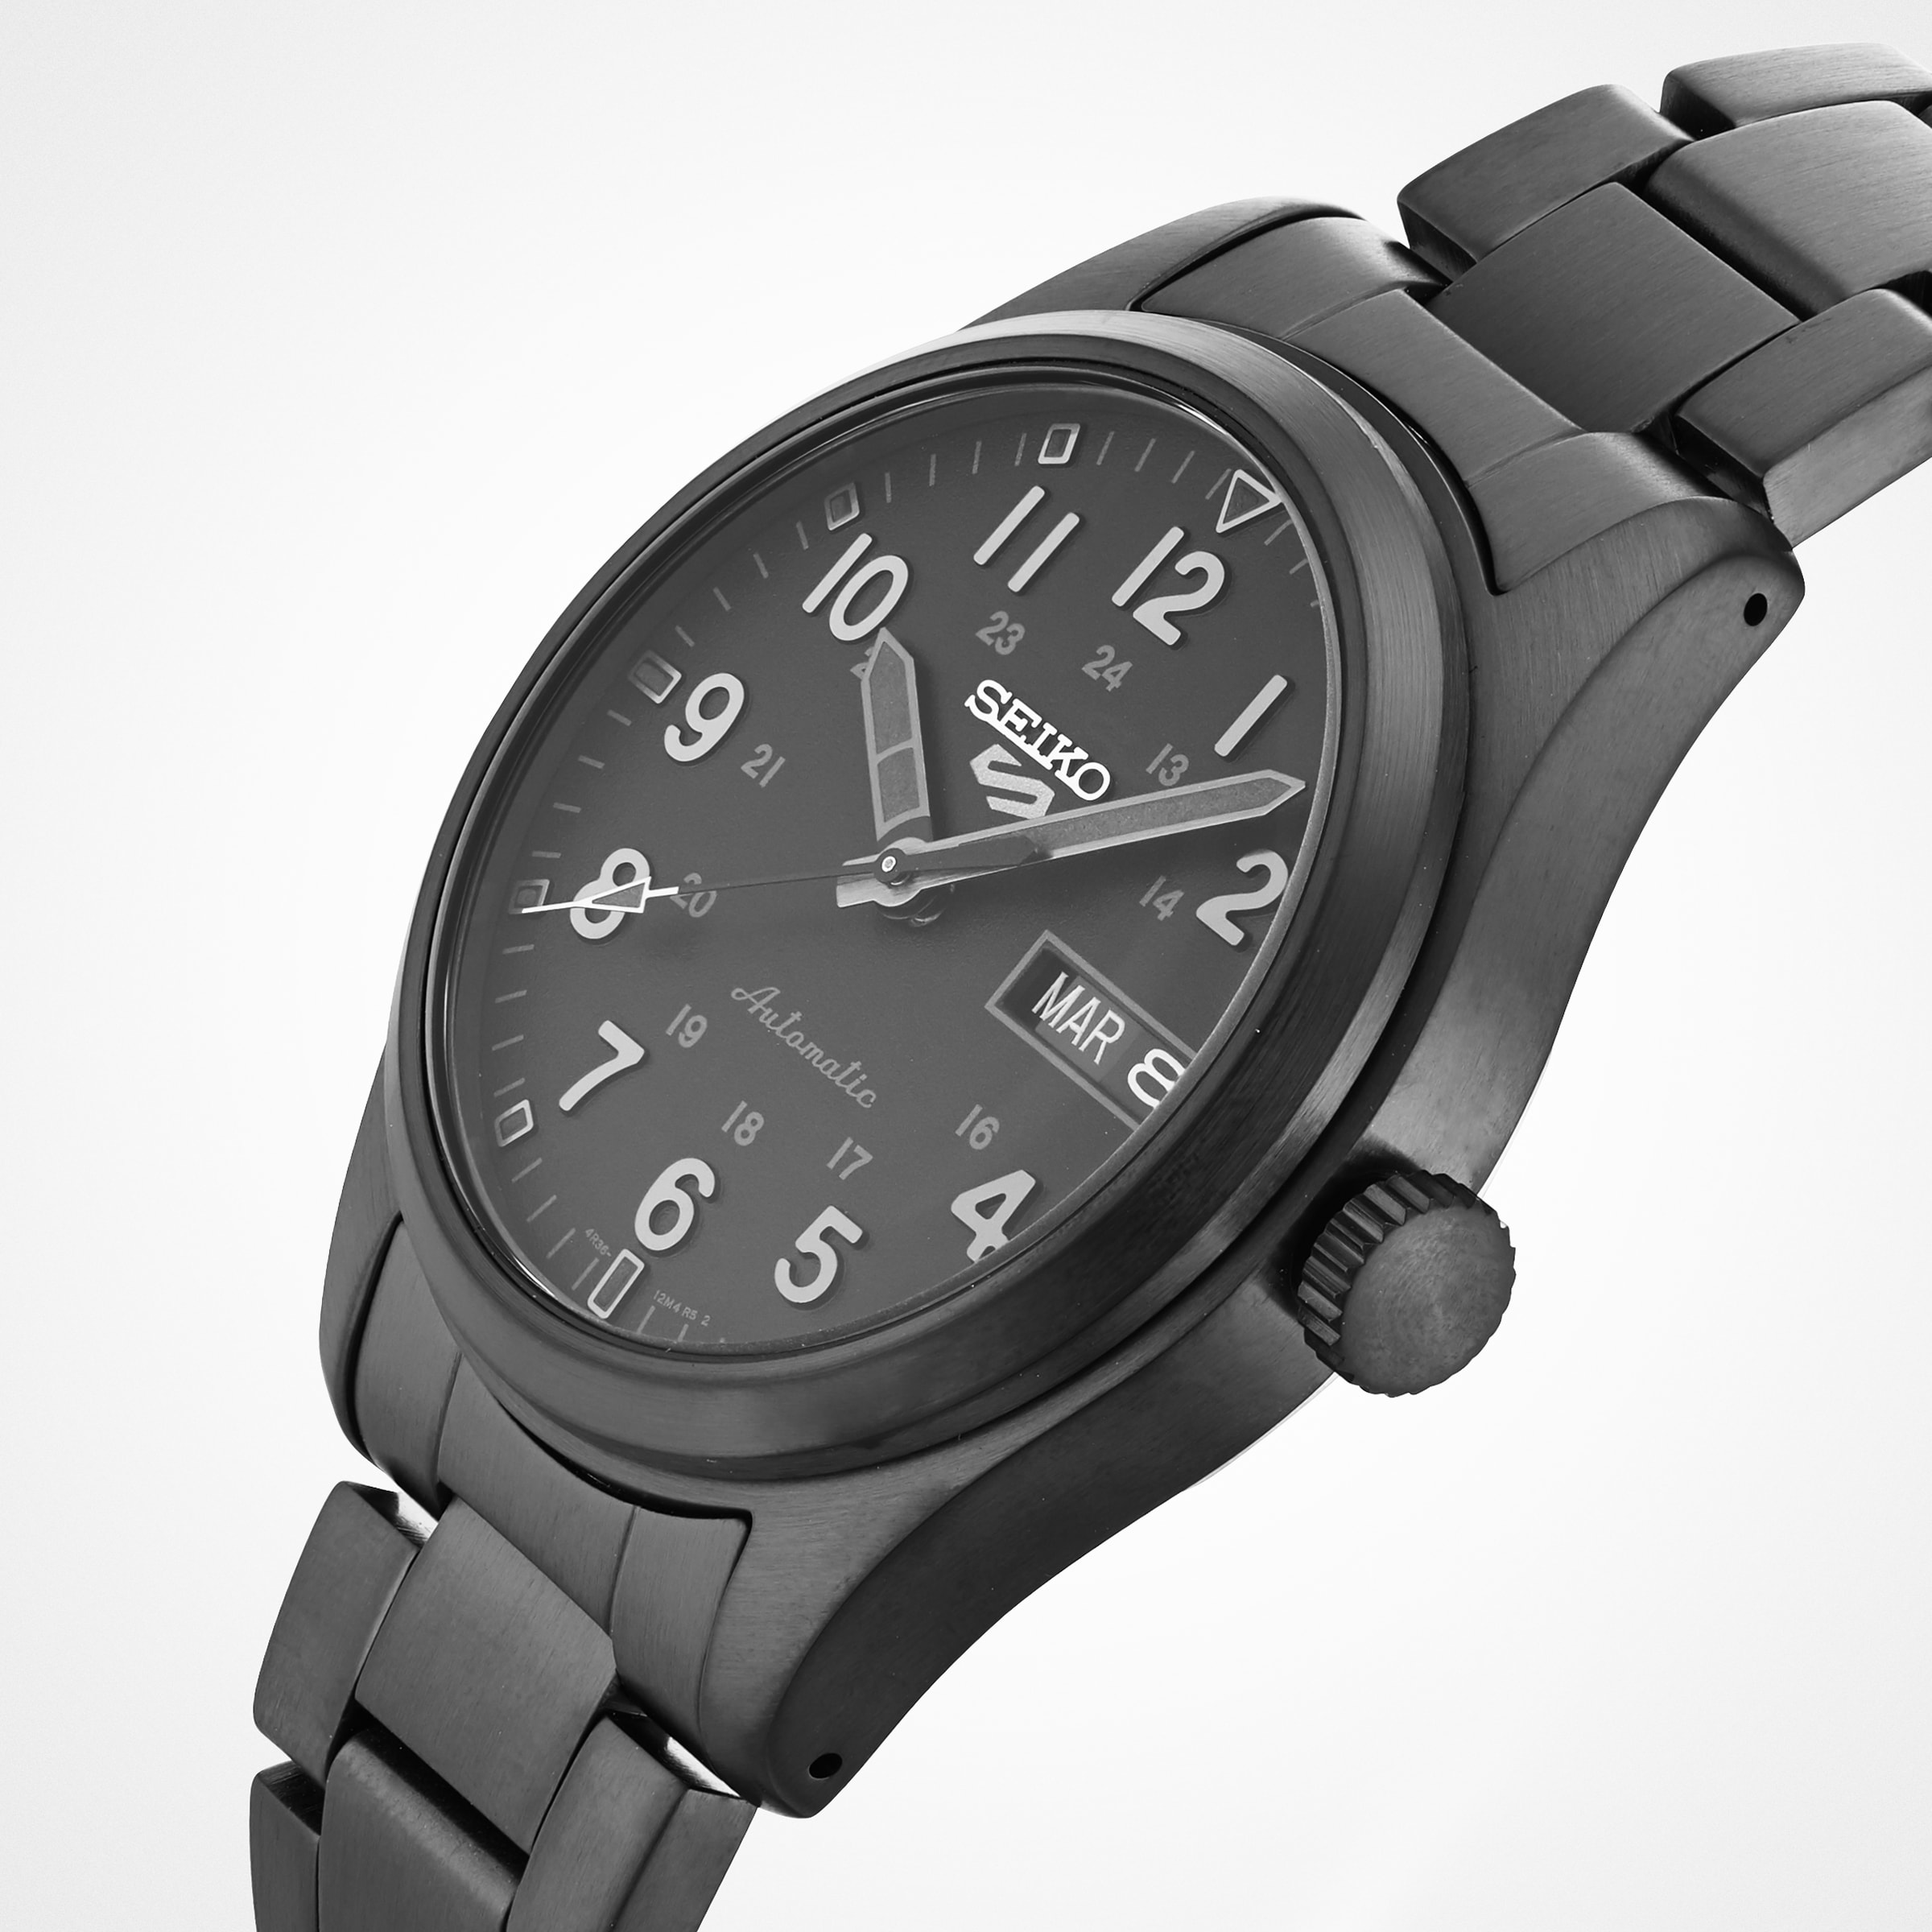 Ralph Lauren's watches speak timeless stealth wealth - Revolution Watch